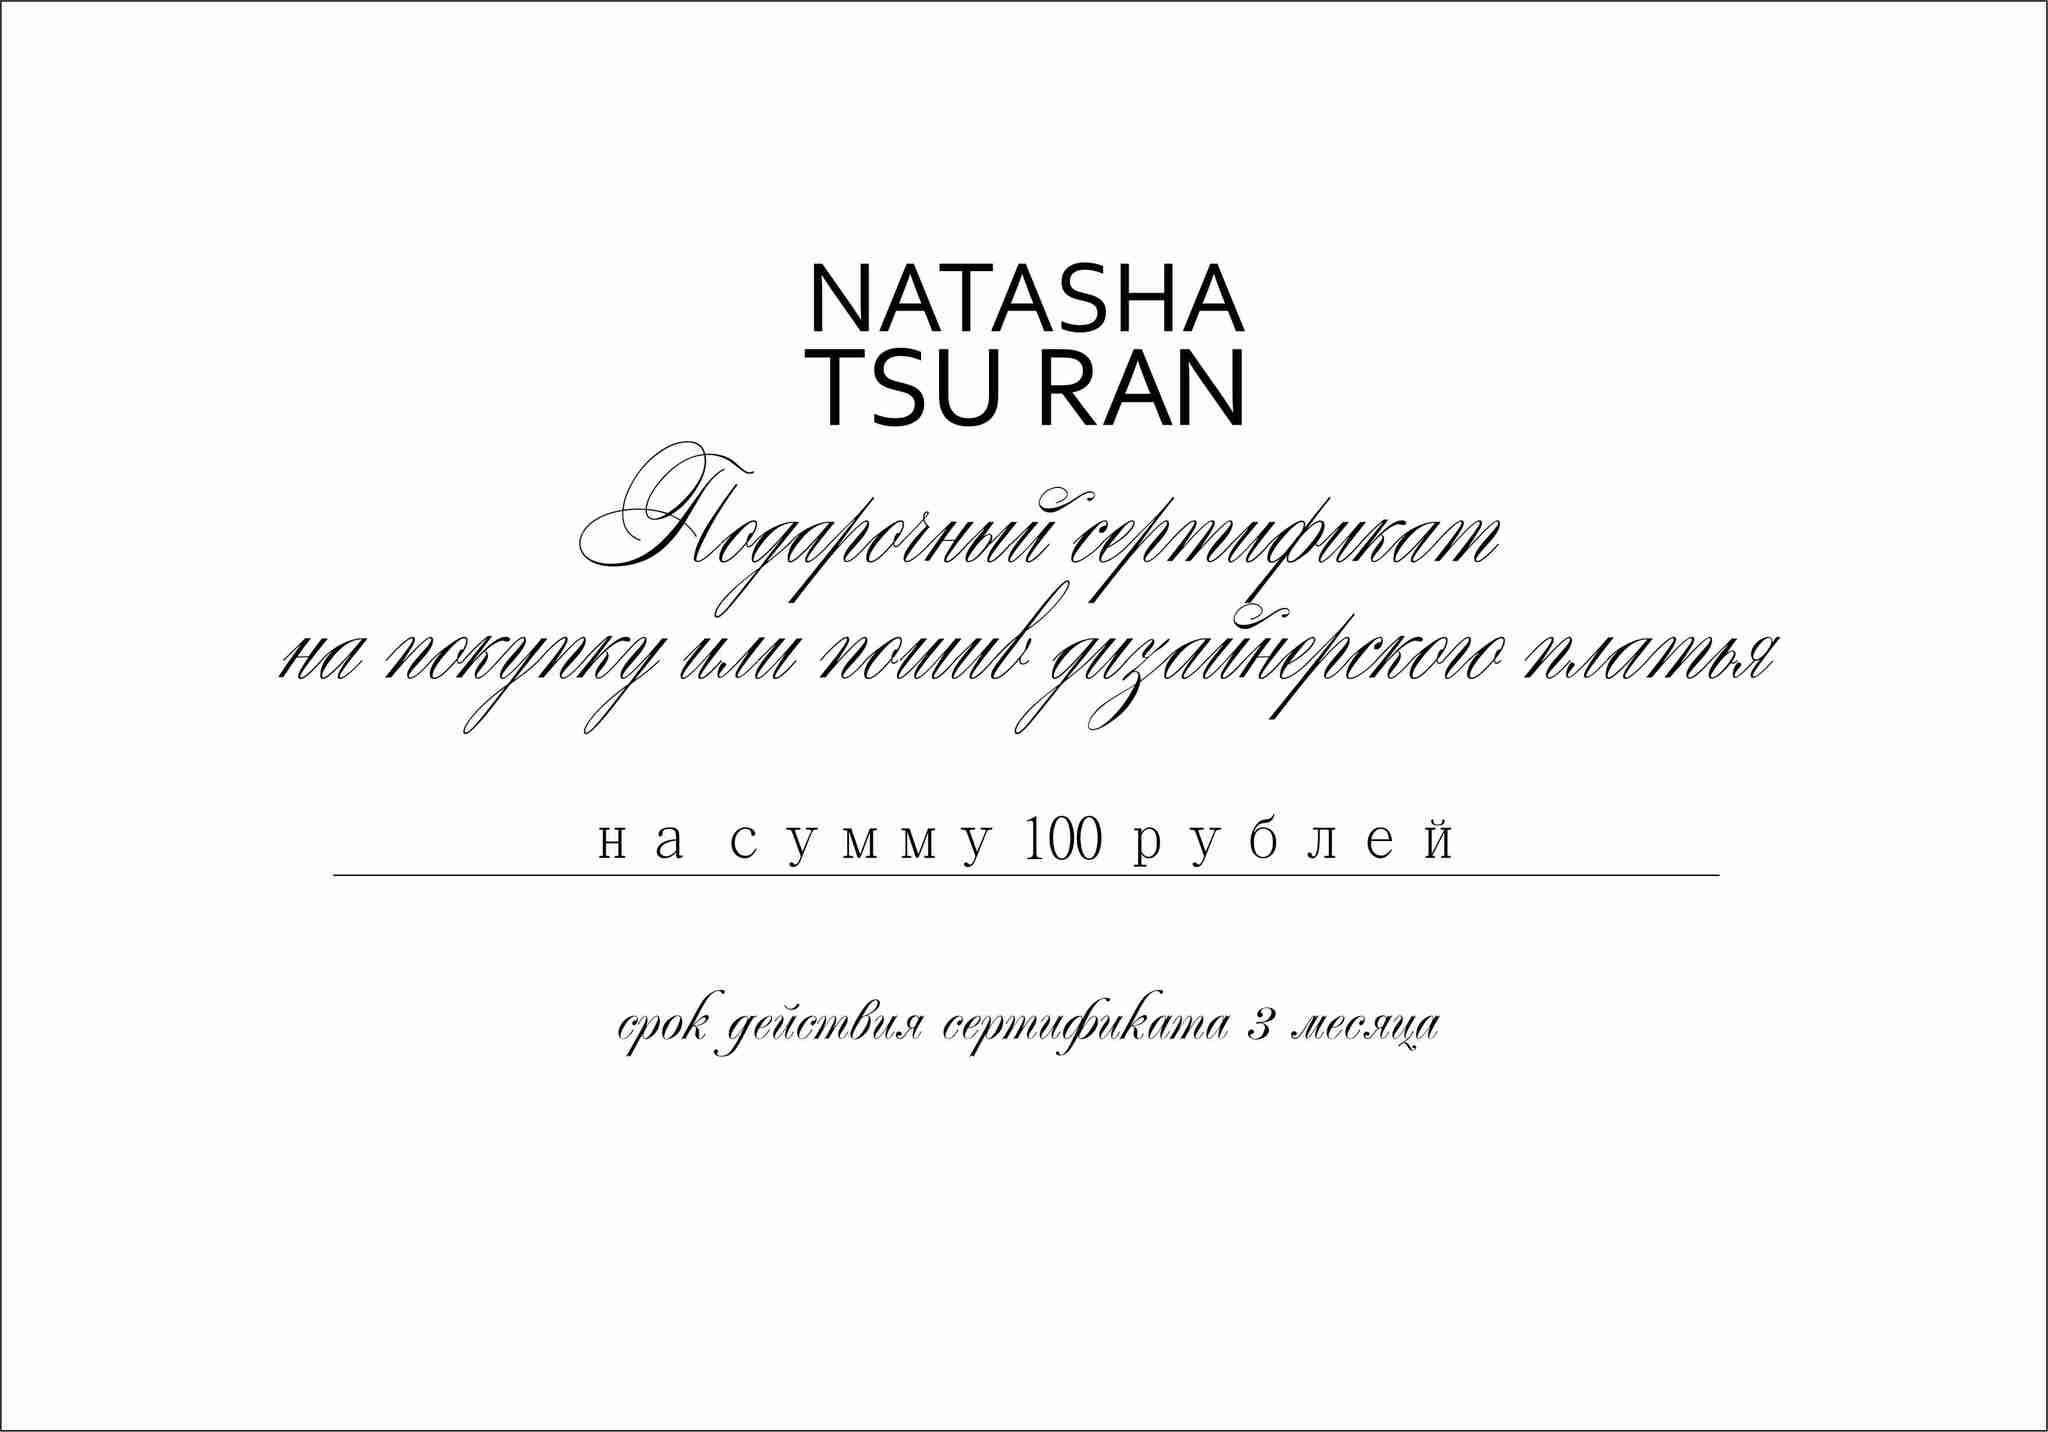 Подарочный сертификат на сумму 100 рублей